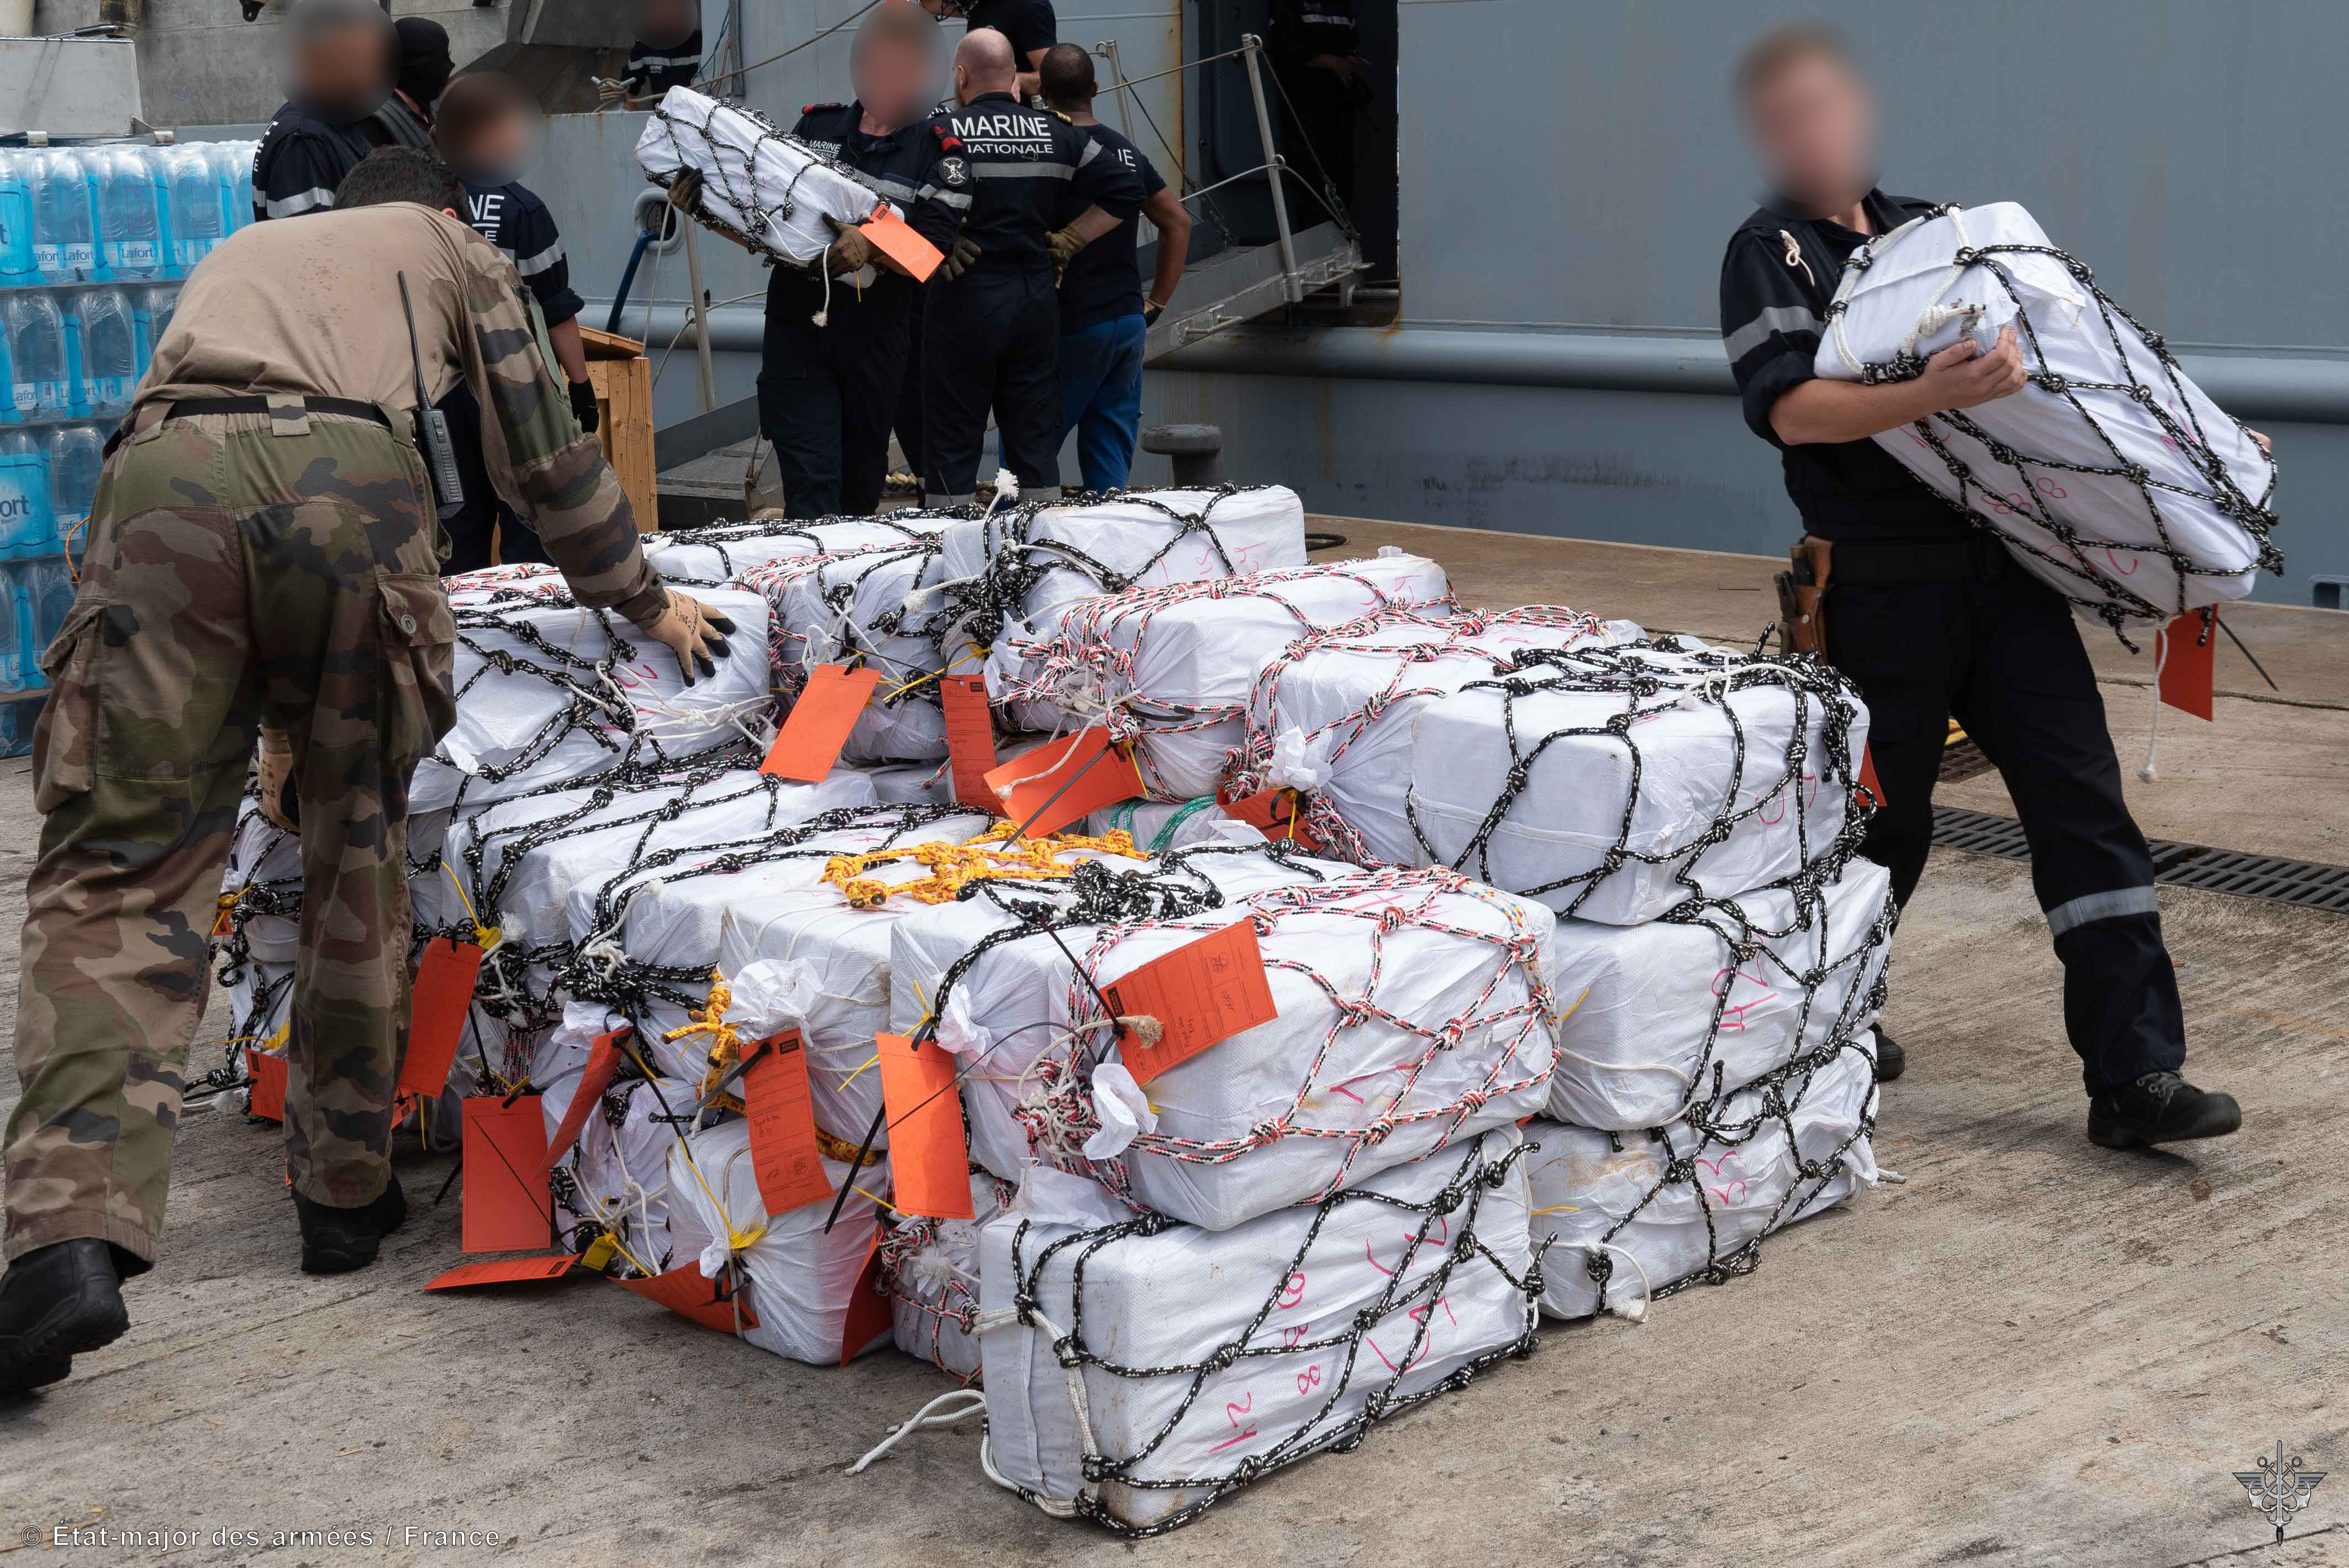     Cocaïne : 1,3 tonne de poudre blanche saisie au large de la Martinique

